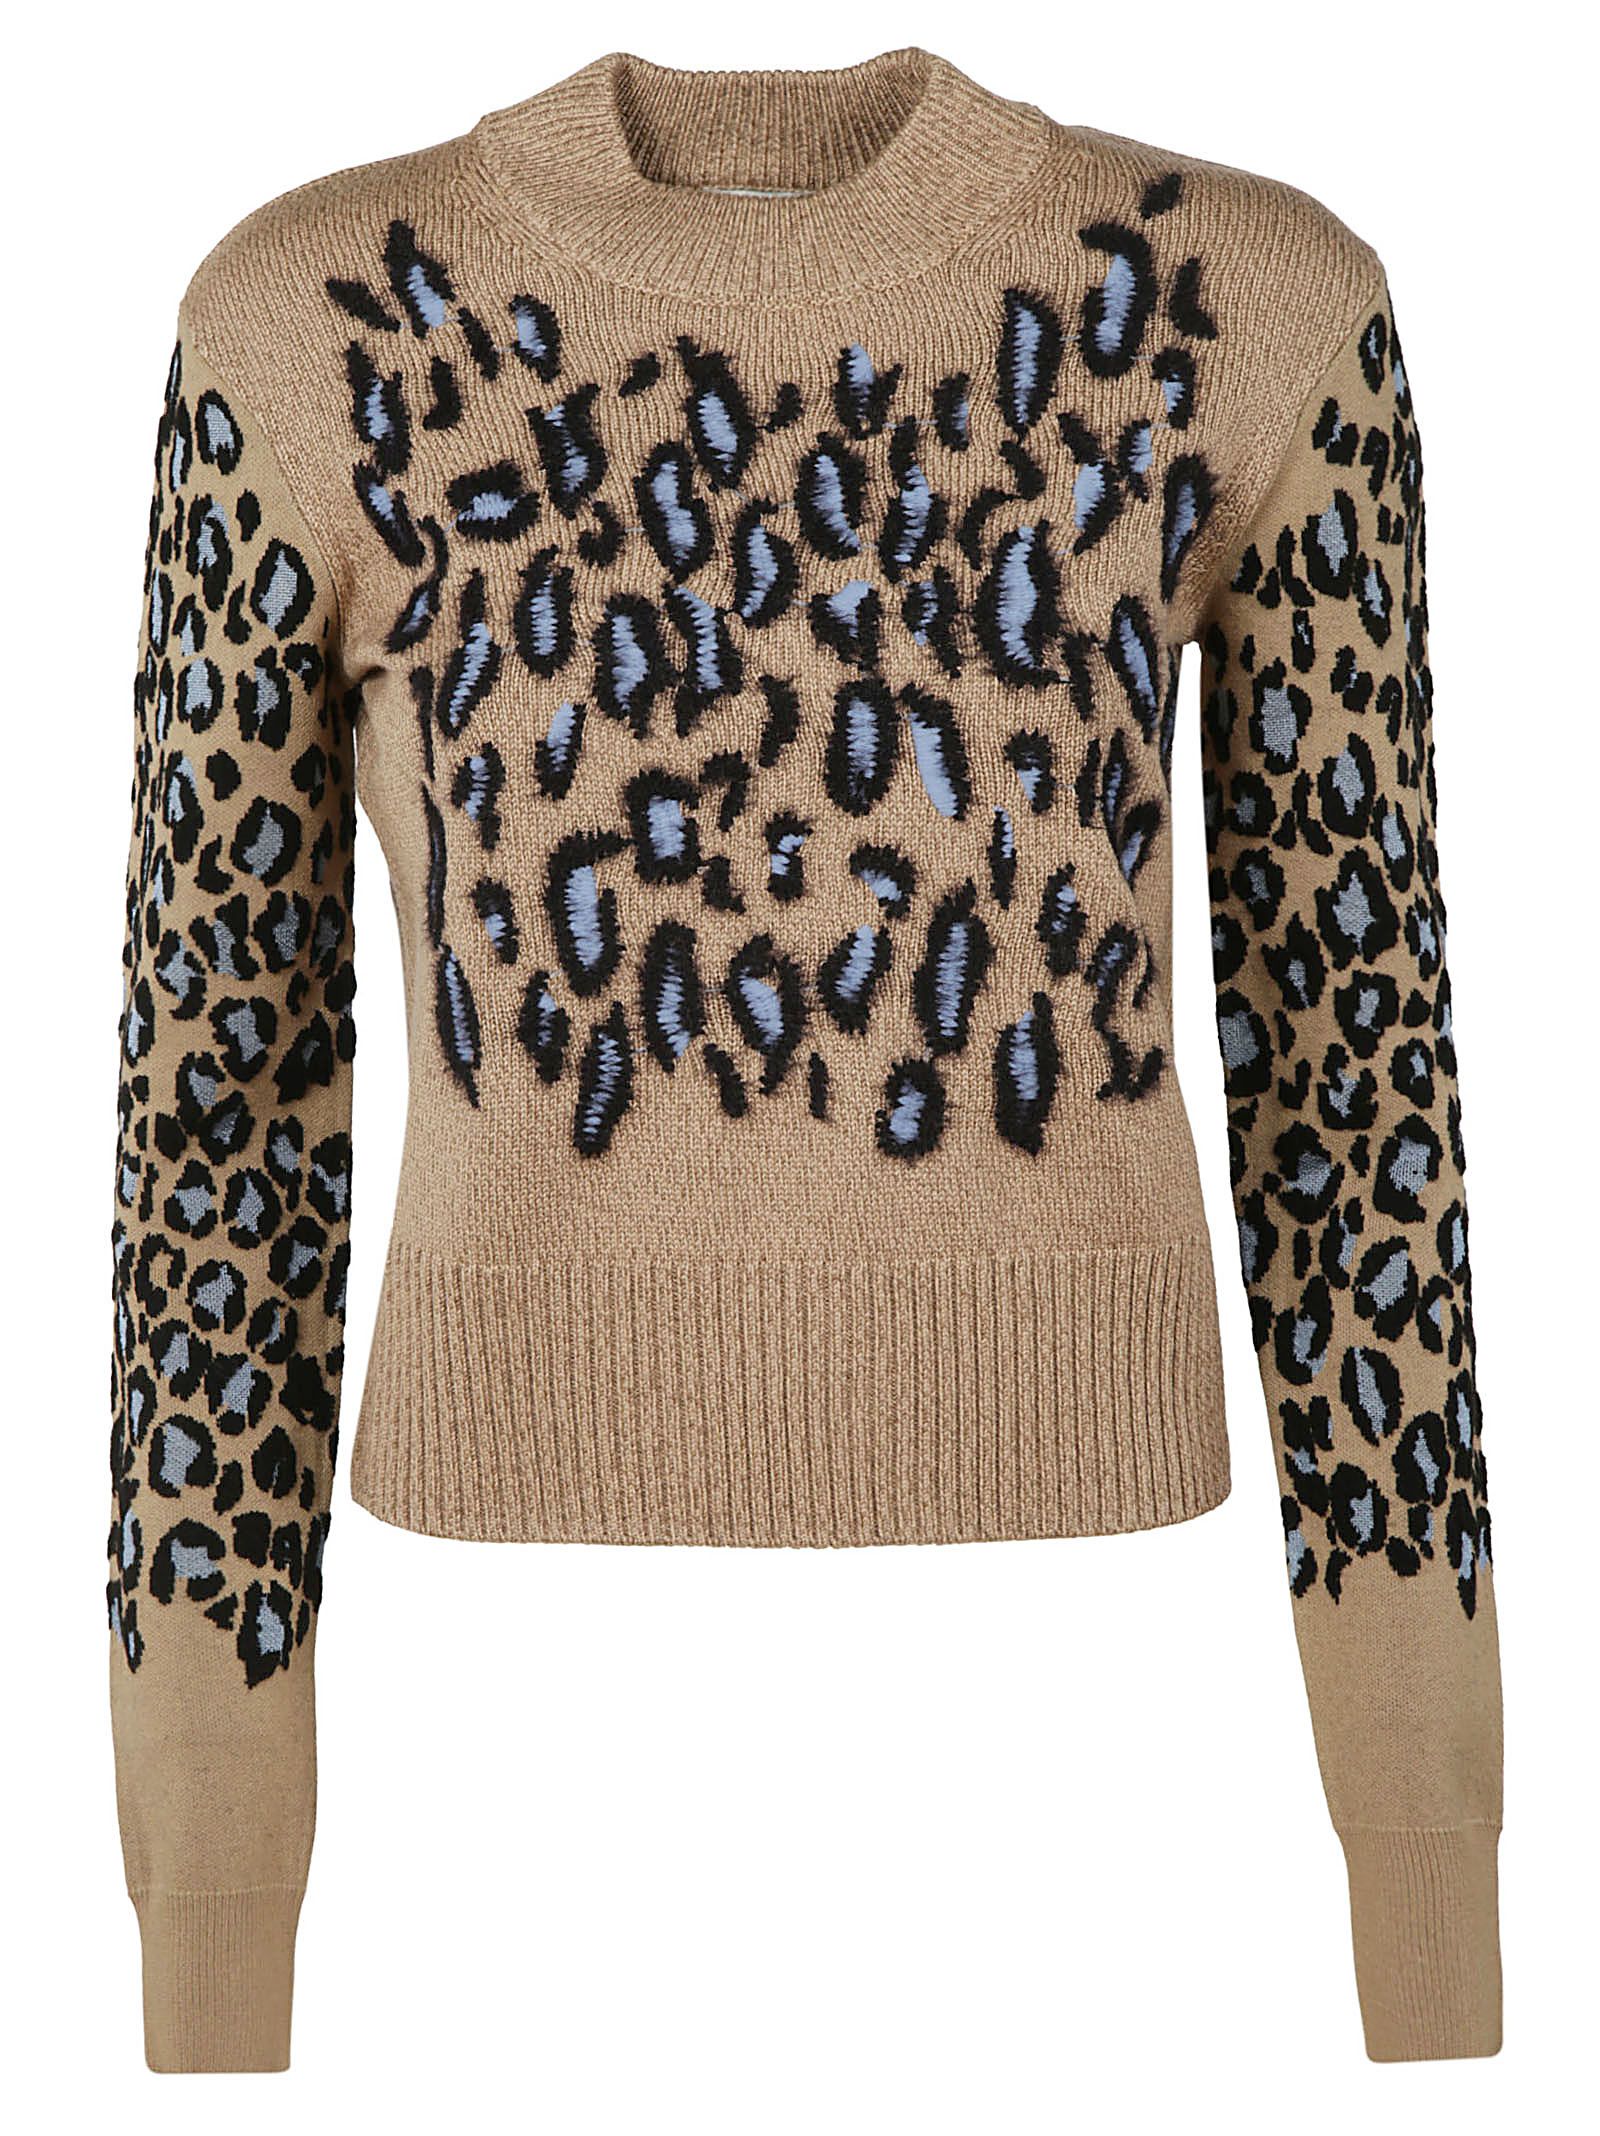 kenzo leopard sweater